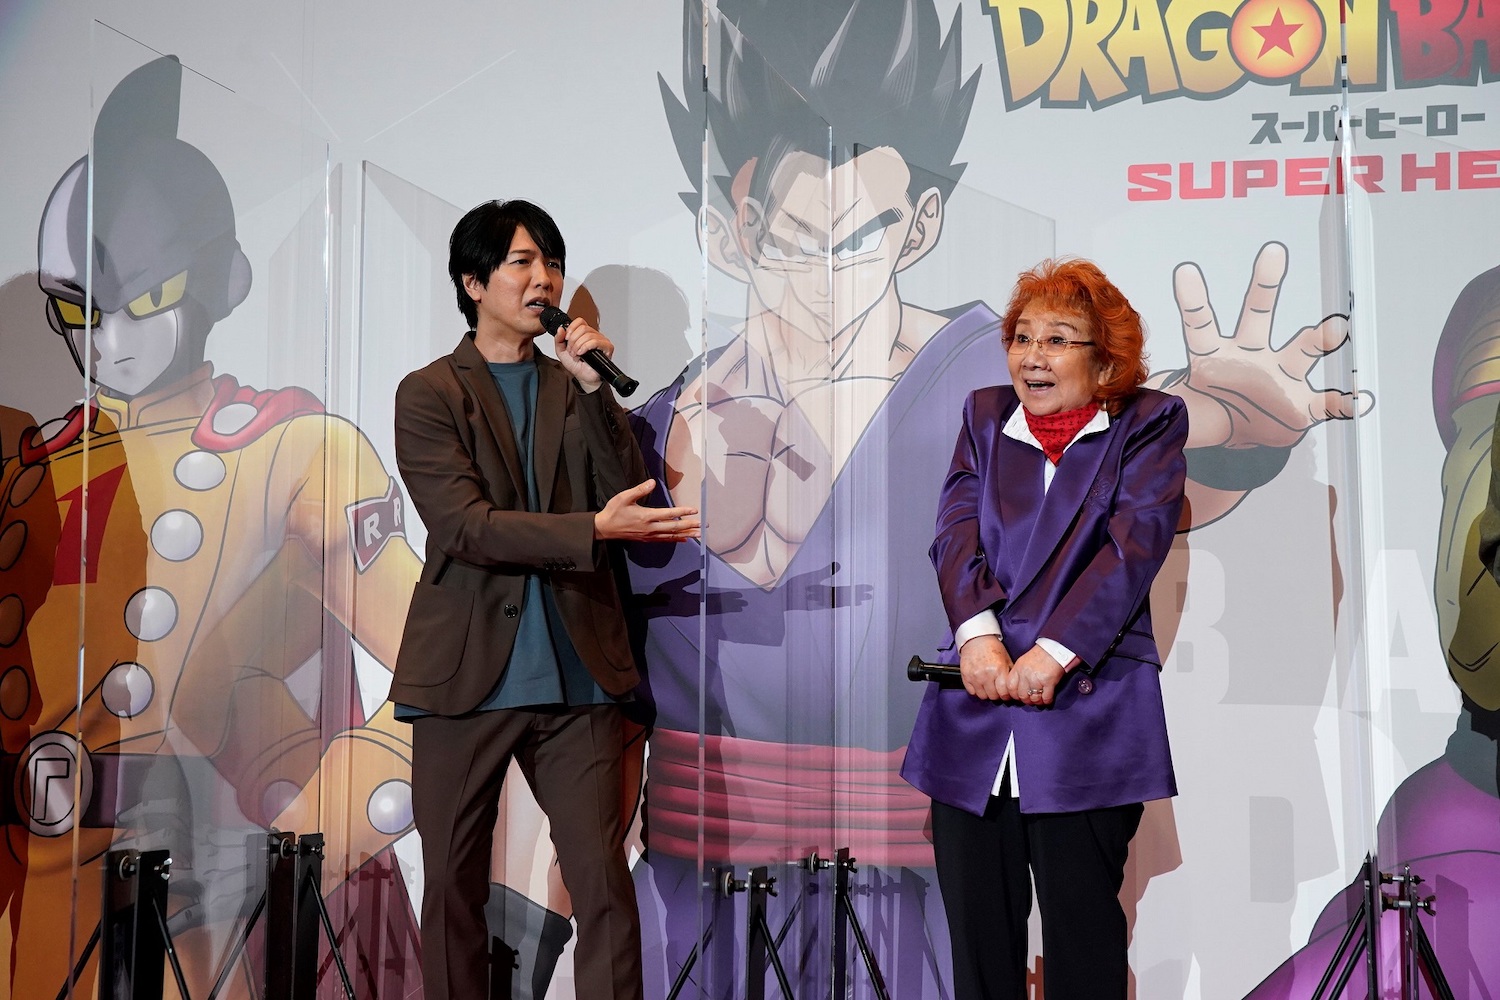 映画『ドラゴンボール超 スーパーヒーロー』初日舞台挨拶に登場した神谷浩史と野沢雅子